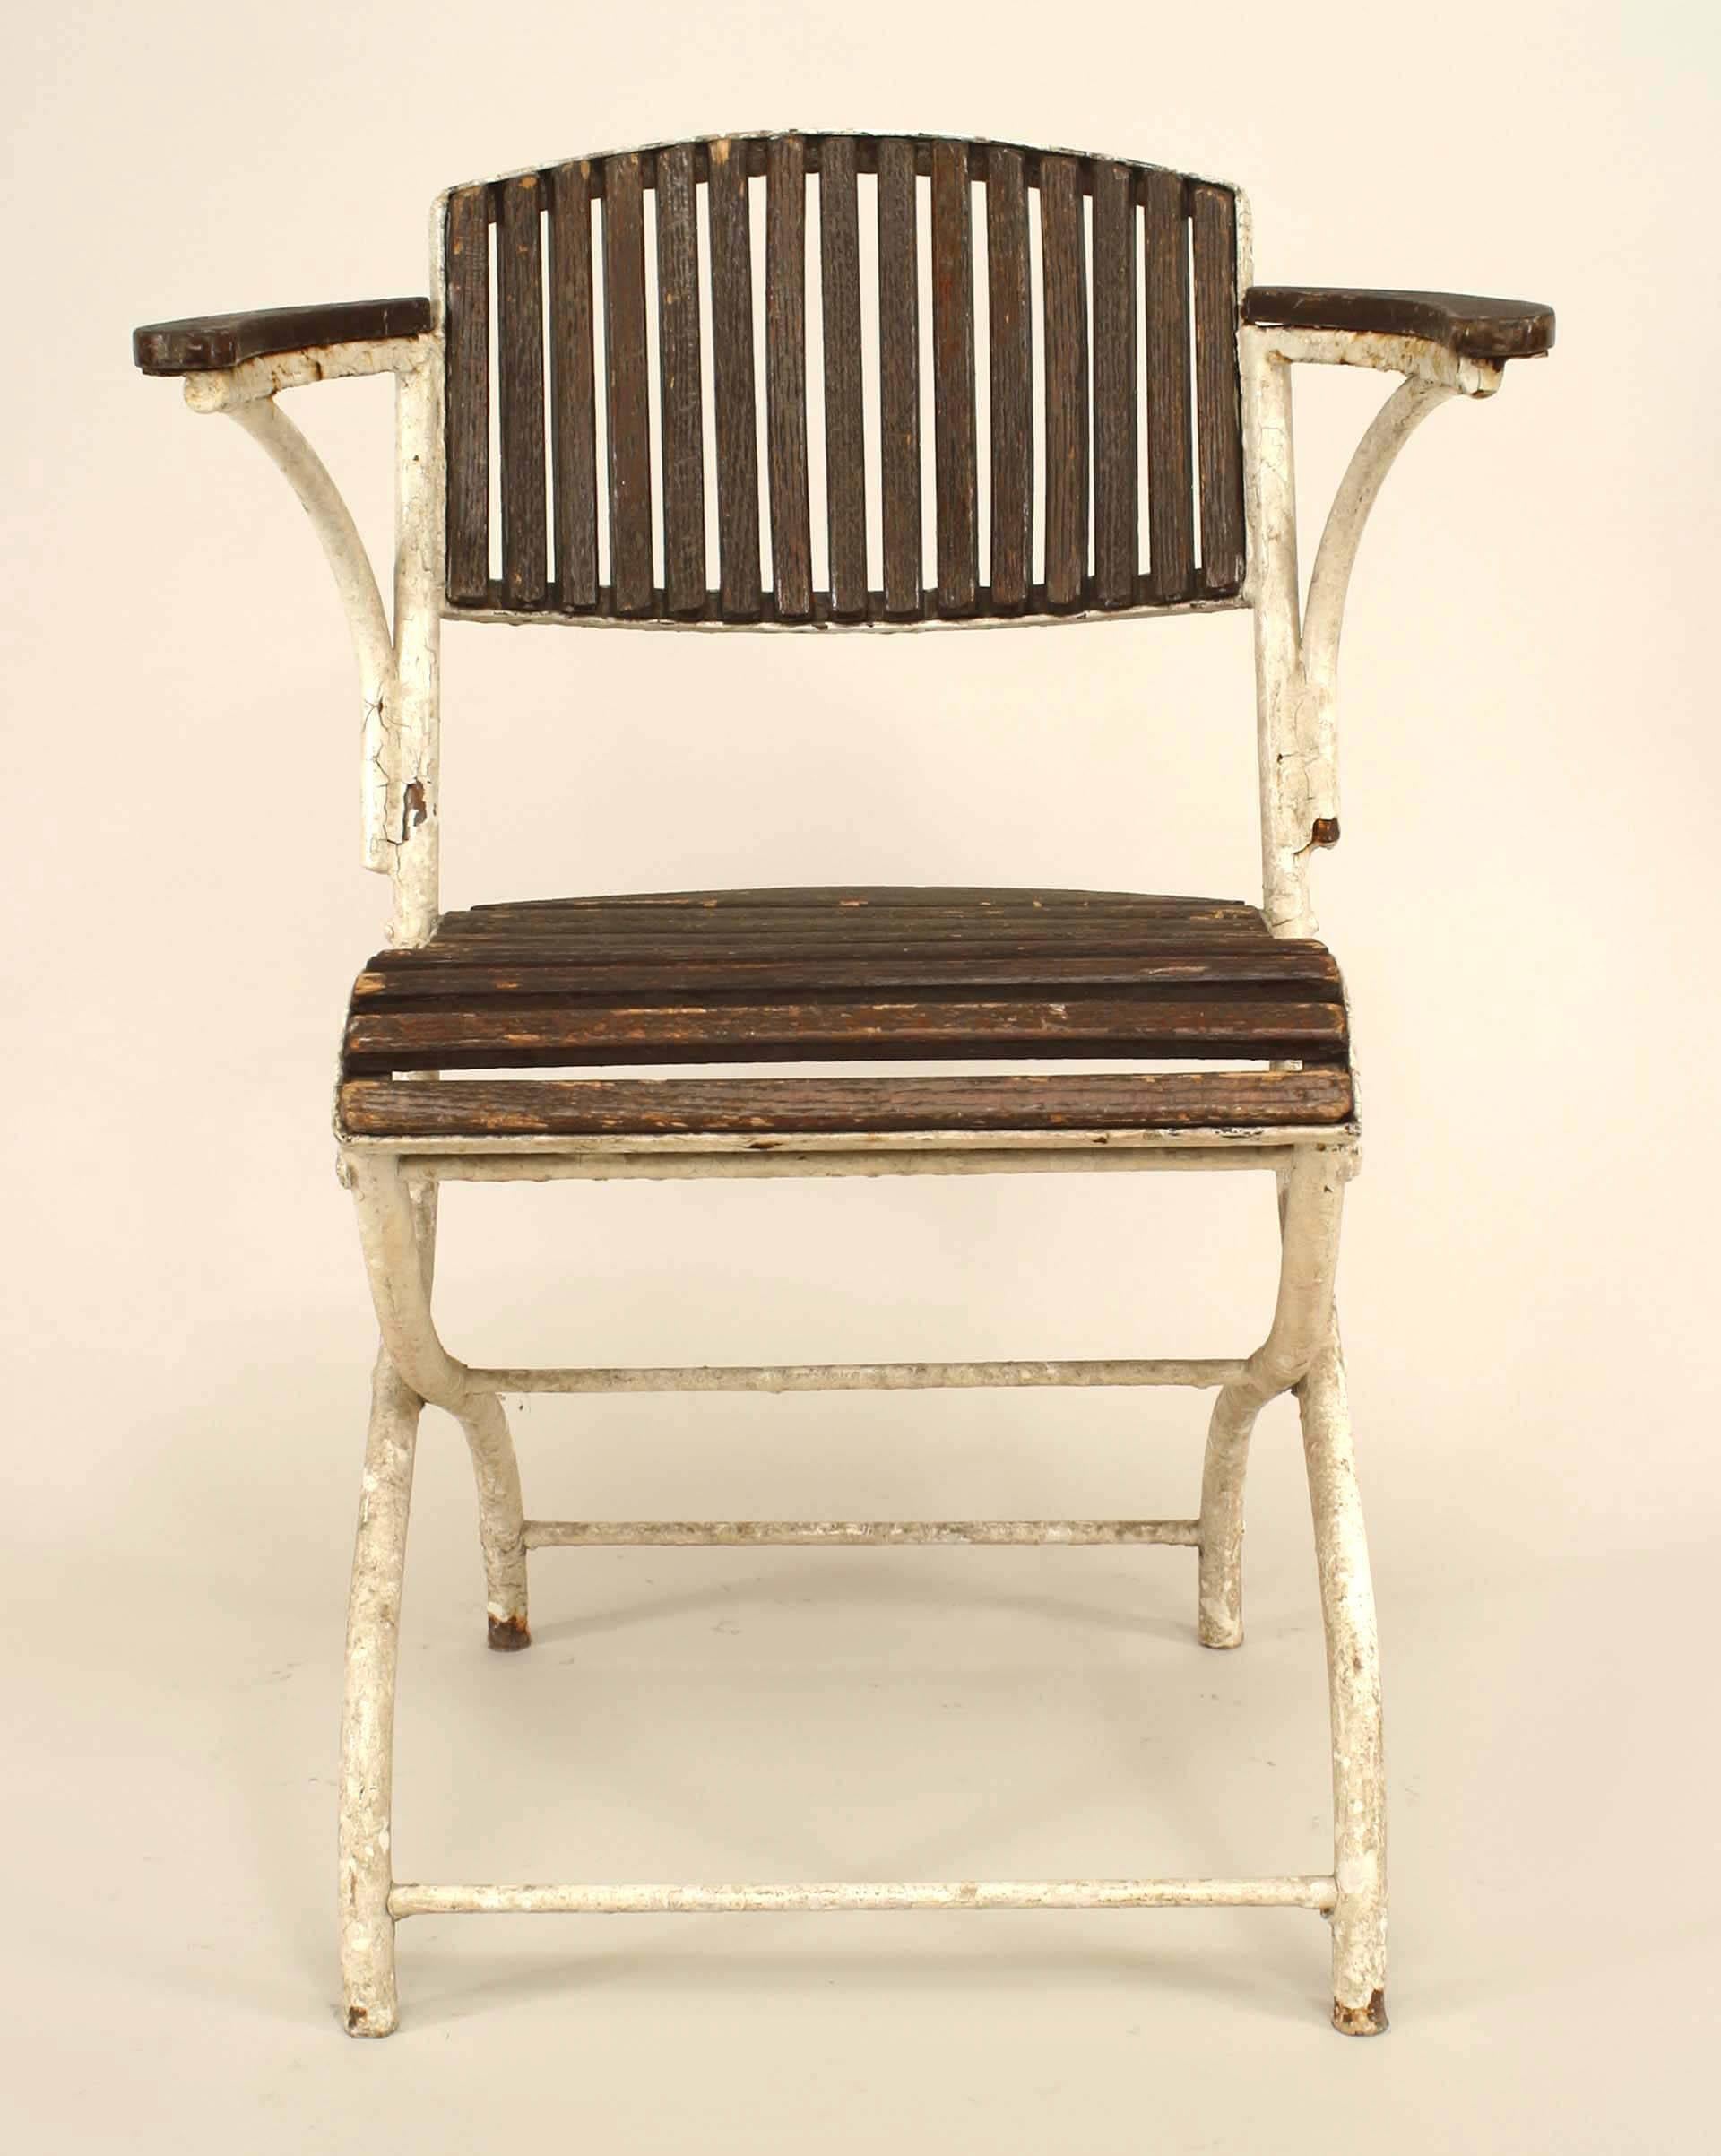 Satz von 6 französischen Art Deco Stühlen für den Außenbereich aus weiß lackiertem Eisen mit klappbarer runder Rückenlehne und Sitz und Rückenlehne aus Lattenholz.
